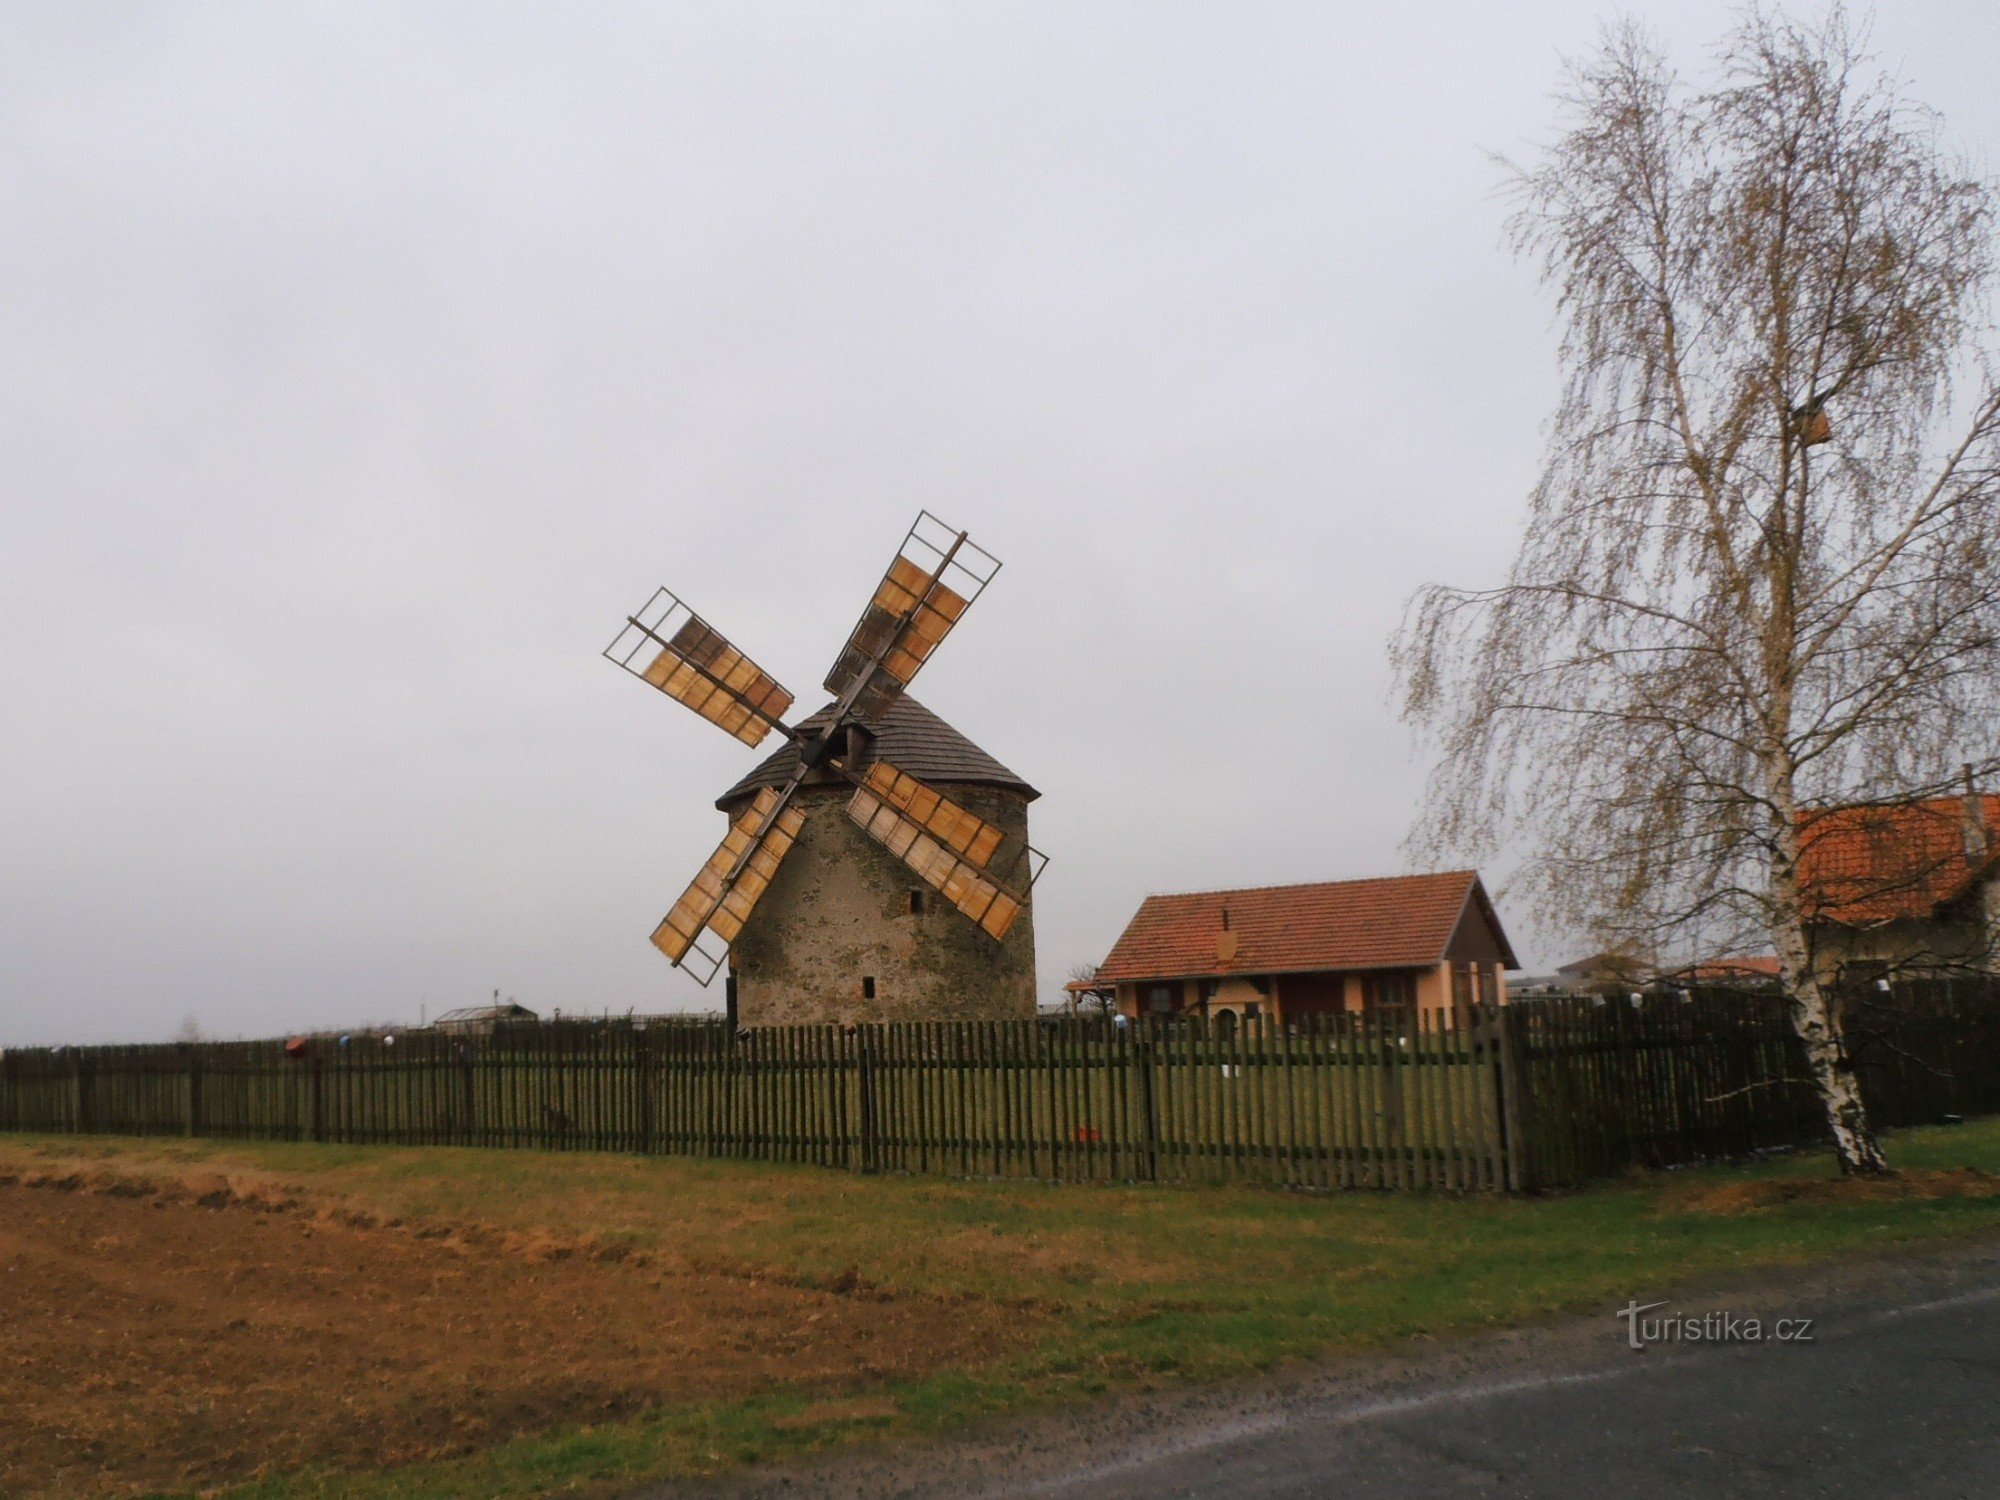 Windmill in the village of Přemyslovice